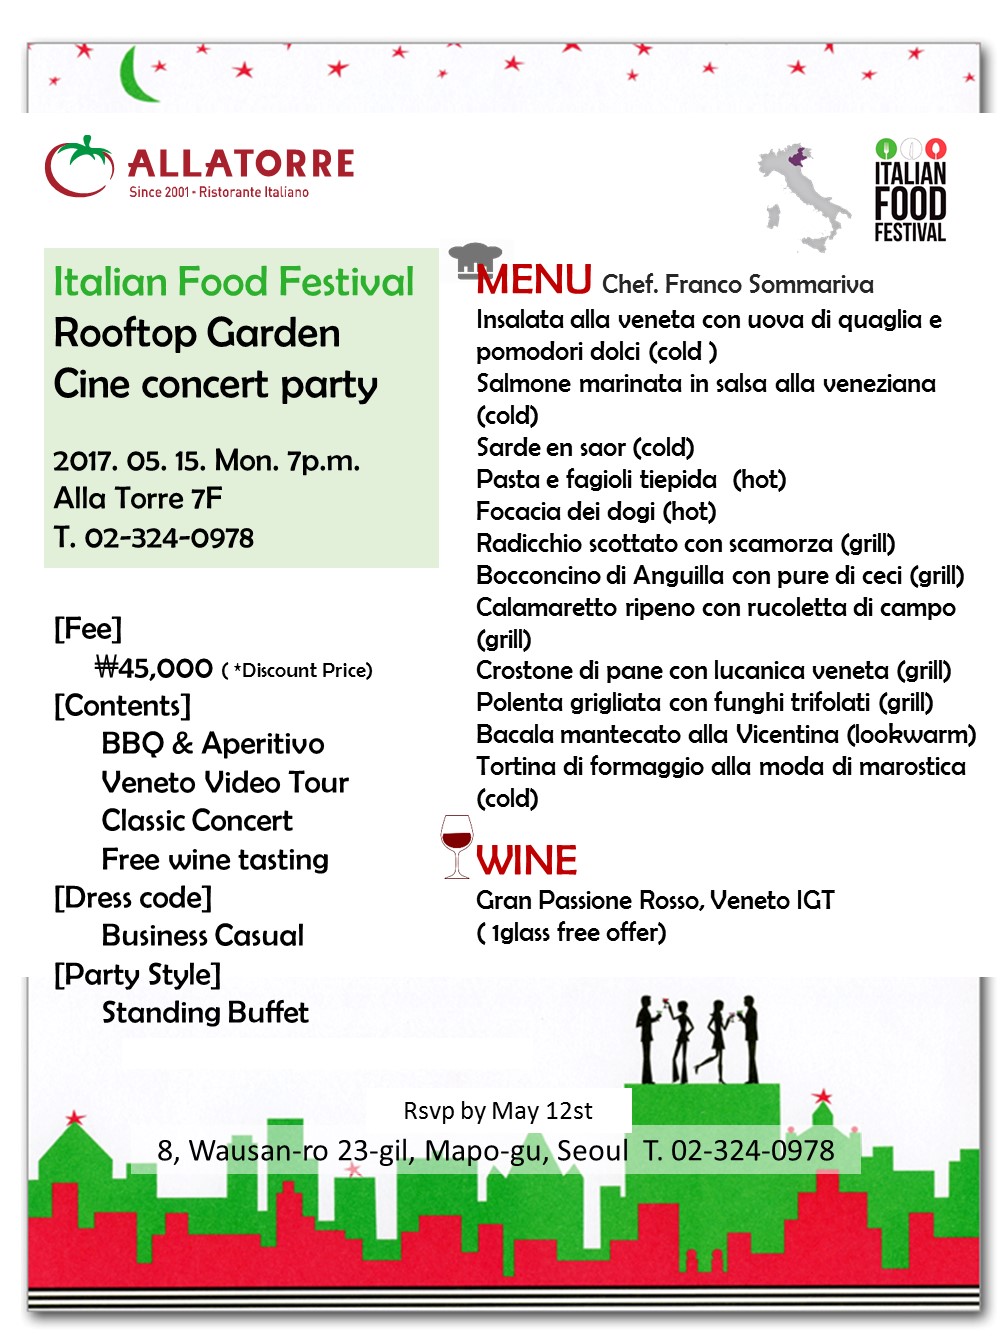 Allatorre - Italian Food Festival Rooftop Garden Cine concert party